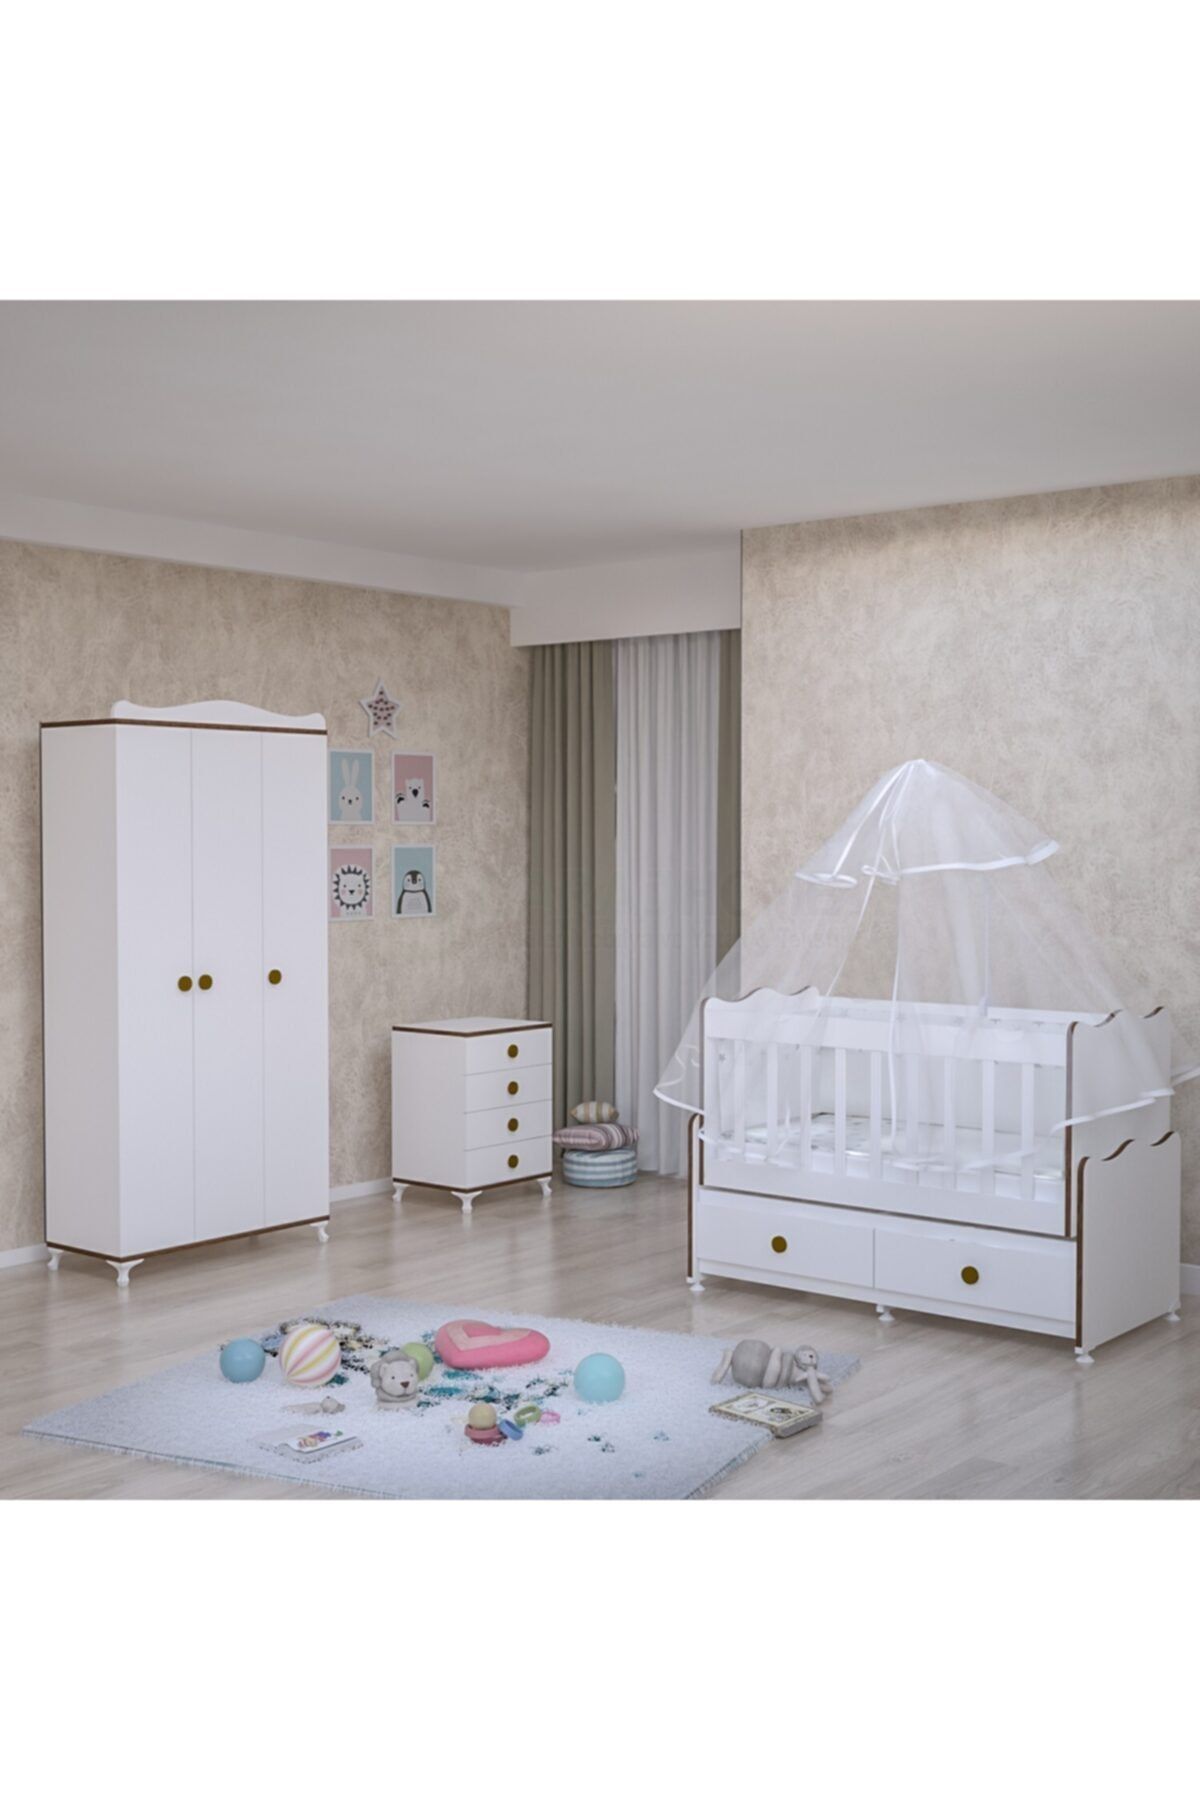 Garaj Home Elegant Yıldız 3 Kapaklı Bebek Odası Takımı - Yatak Ve Uyku Seti Kombinli-sümela- Uykuseti Krem